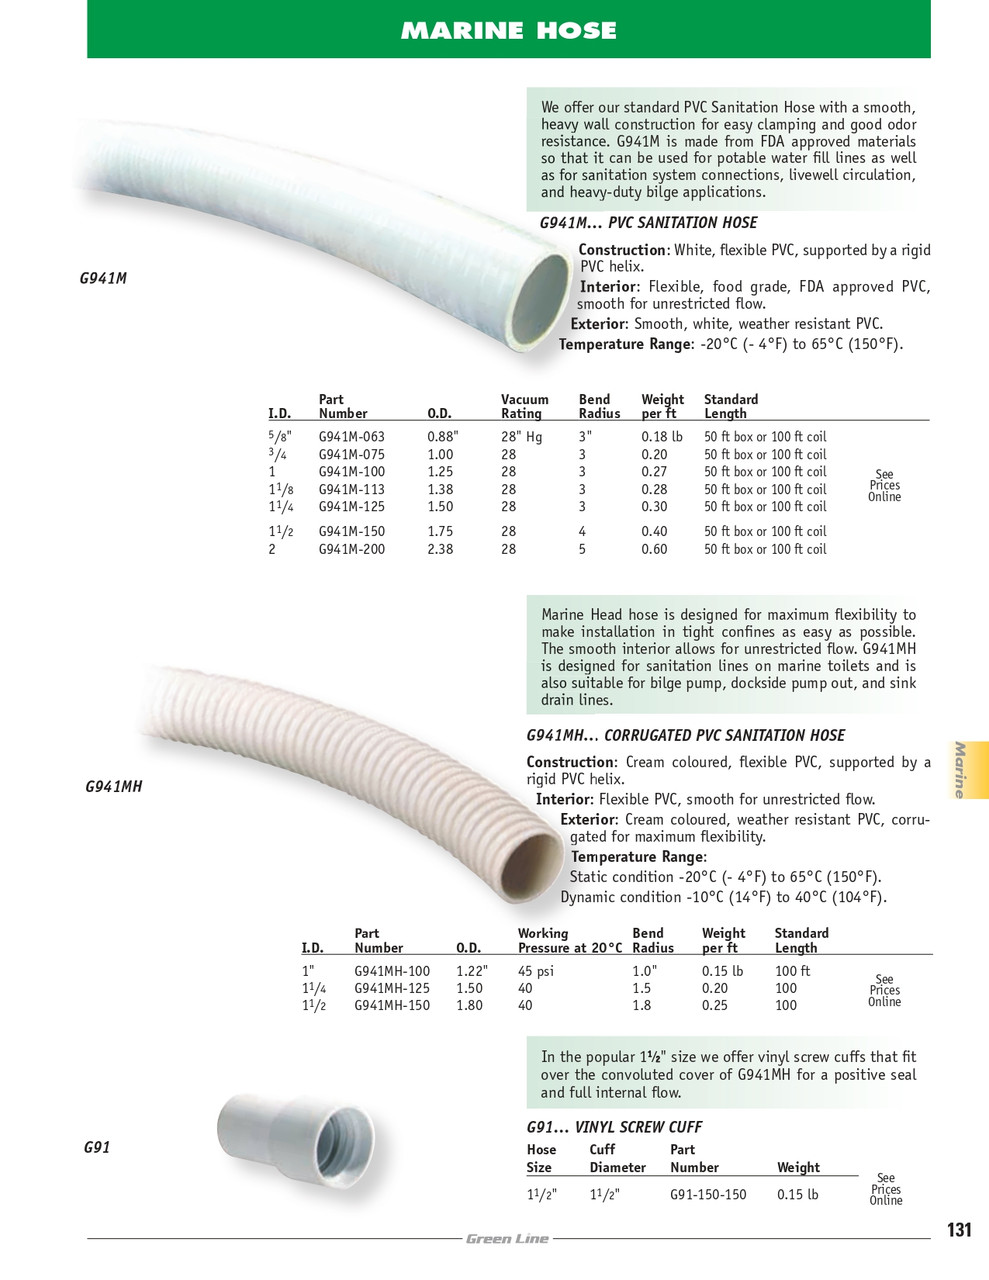 1-1/4" PVC Sanitation Hose   G941M-125